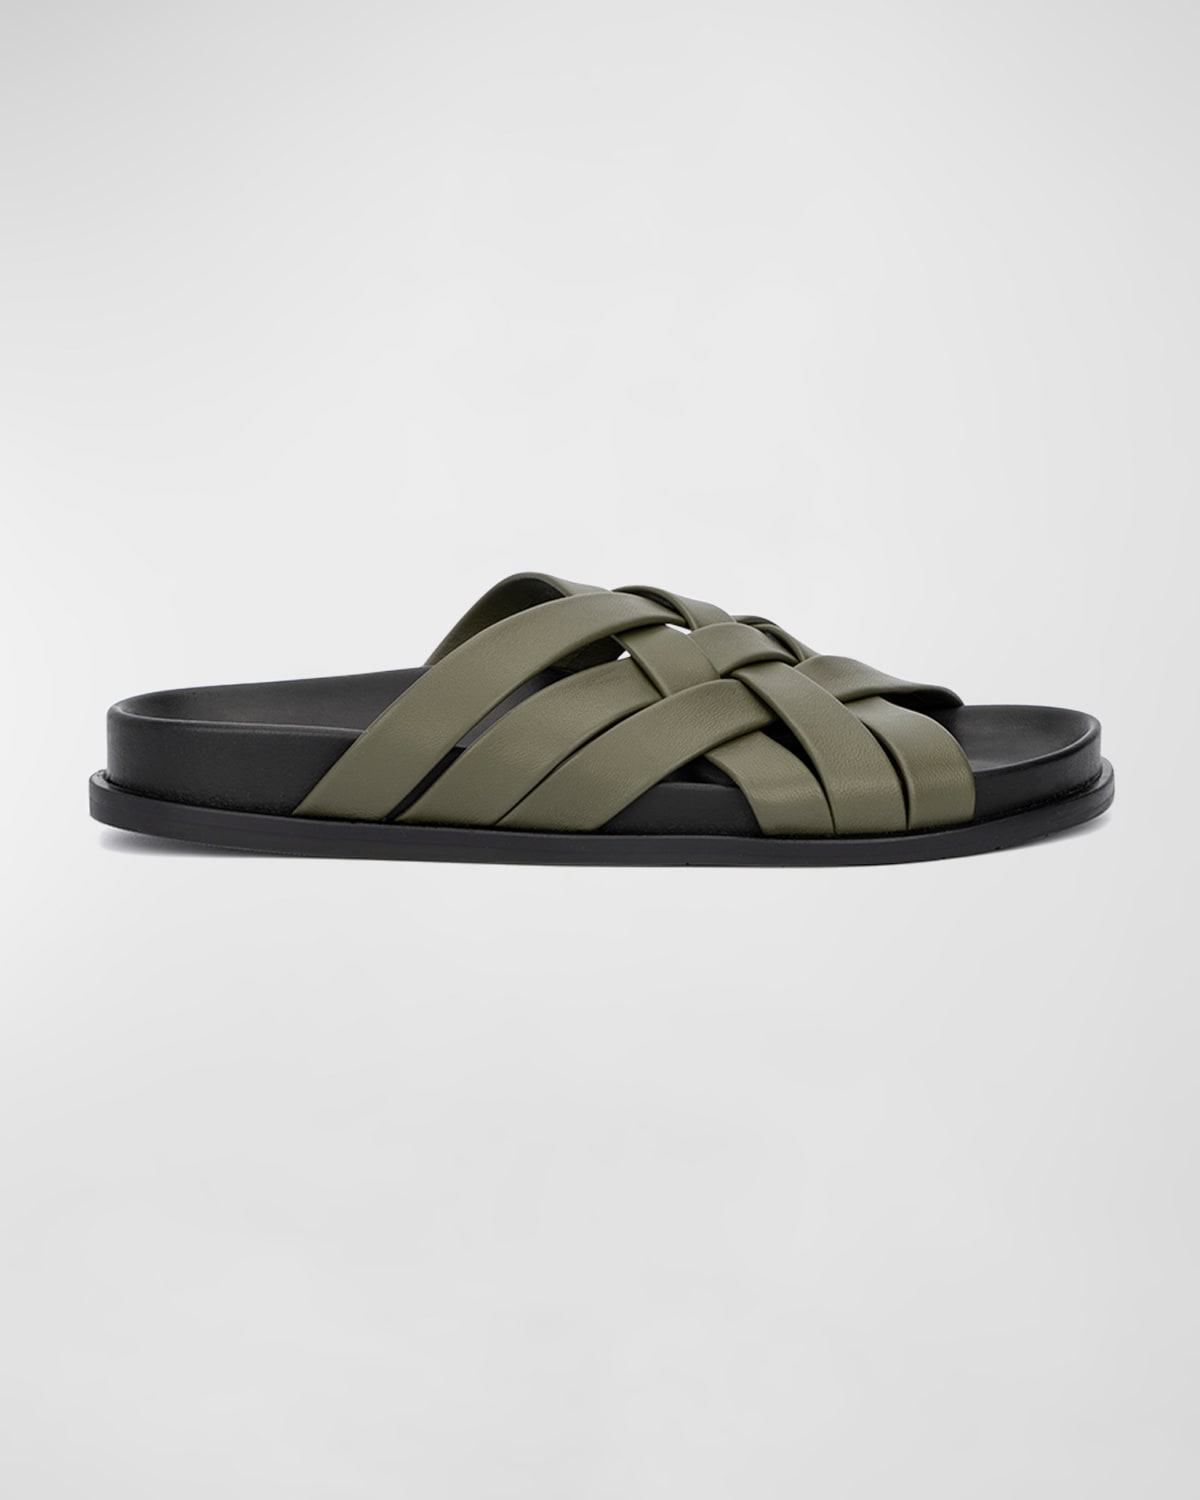 Aquatalia Iselda Woven Leather Slide Sandals